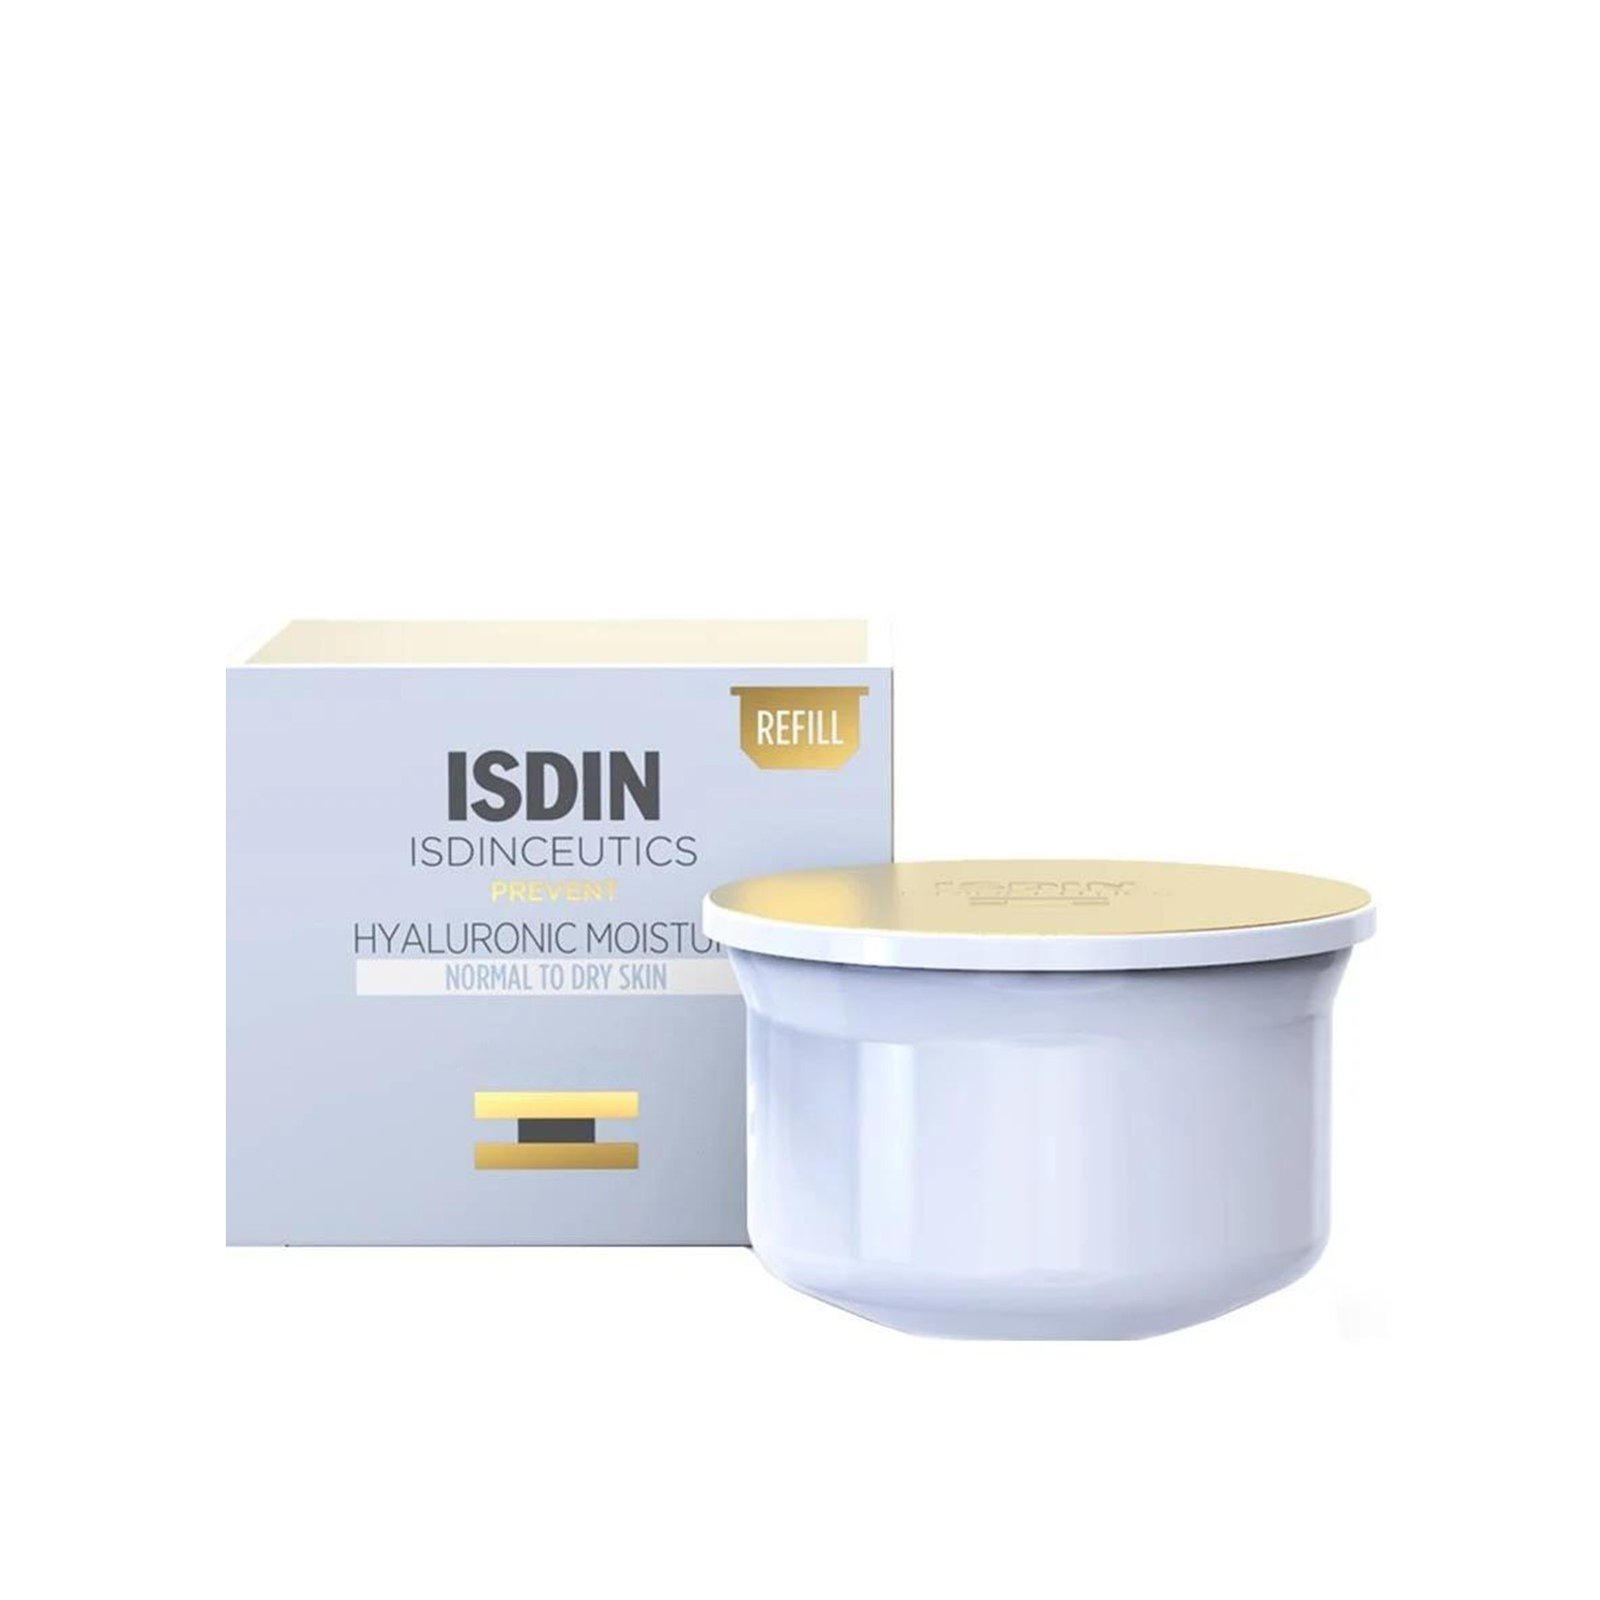 ISDINCEUTICS Hyaluronic Moisture Cream Normal To Dry Skin Refill 50g